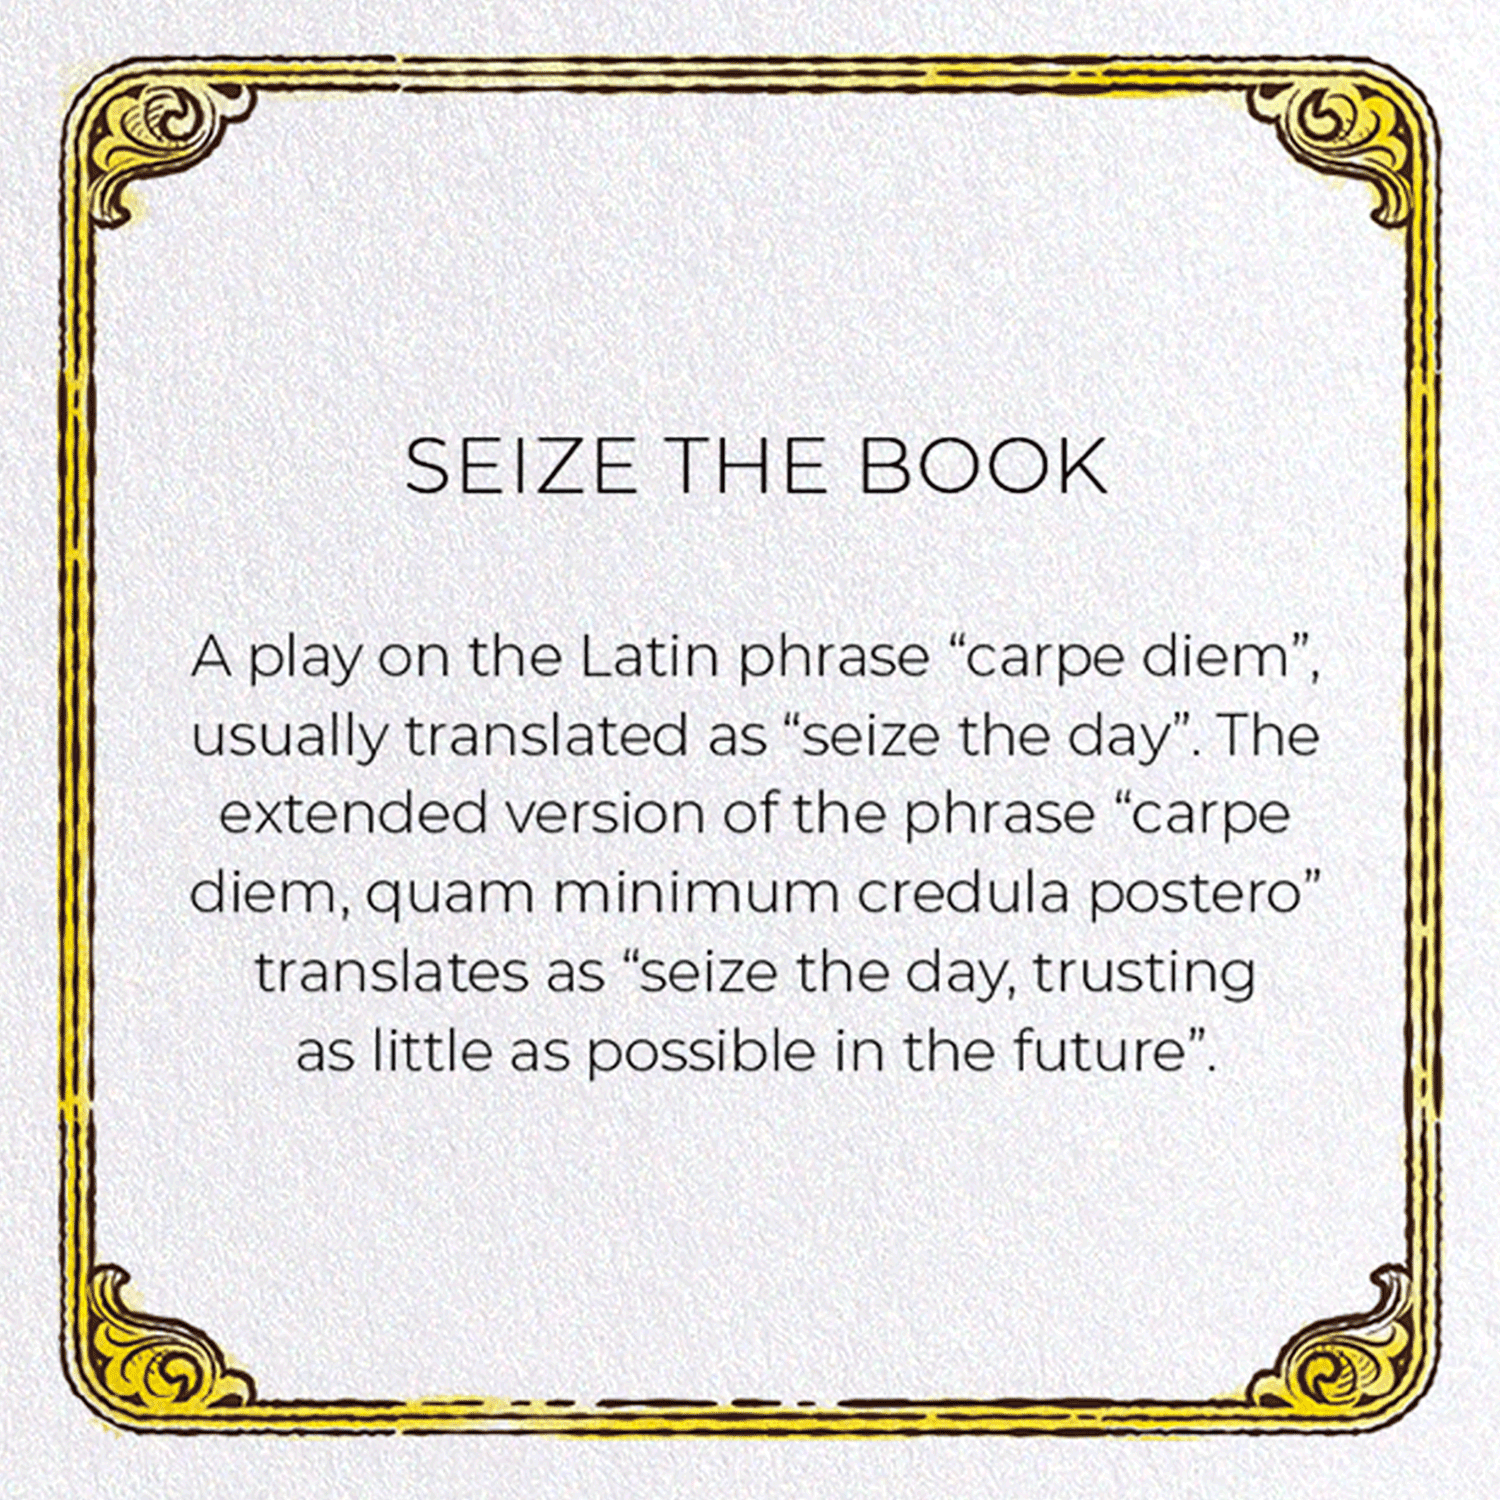 SEIZE THE BOOK